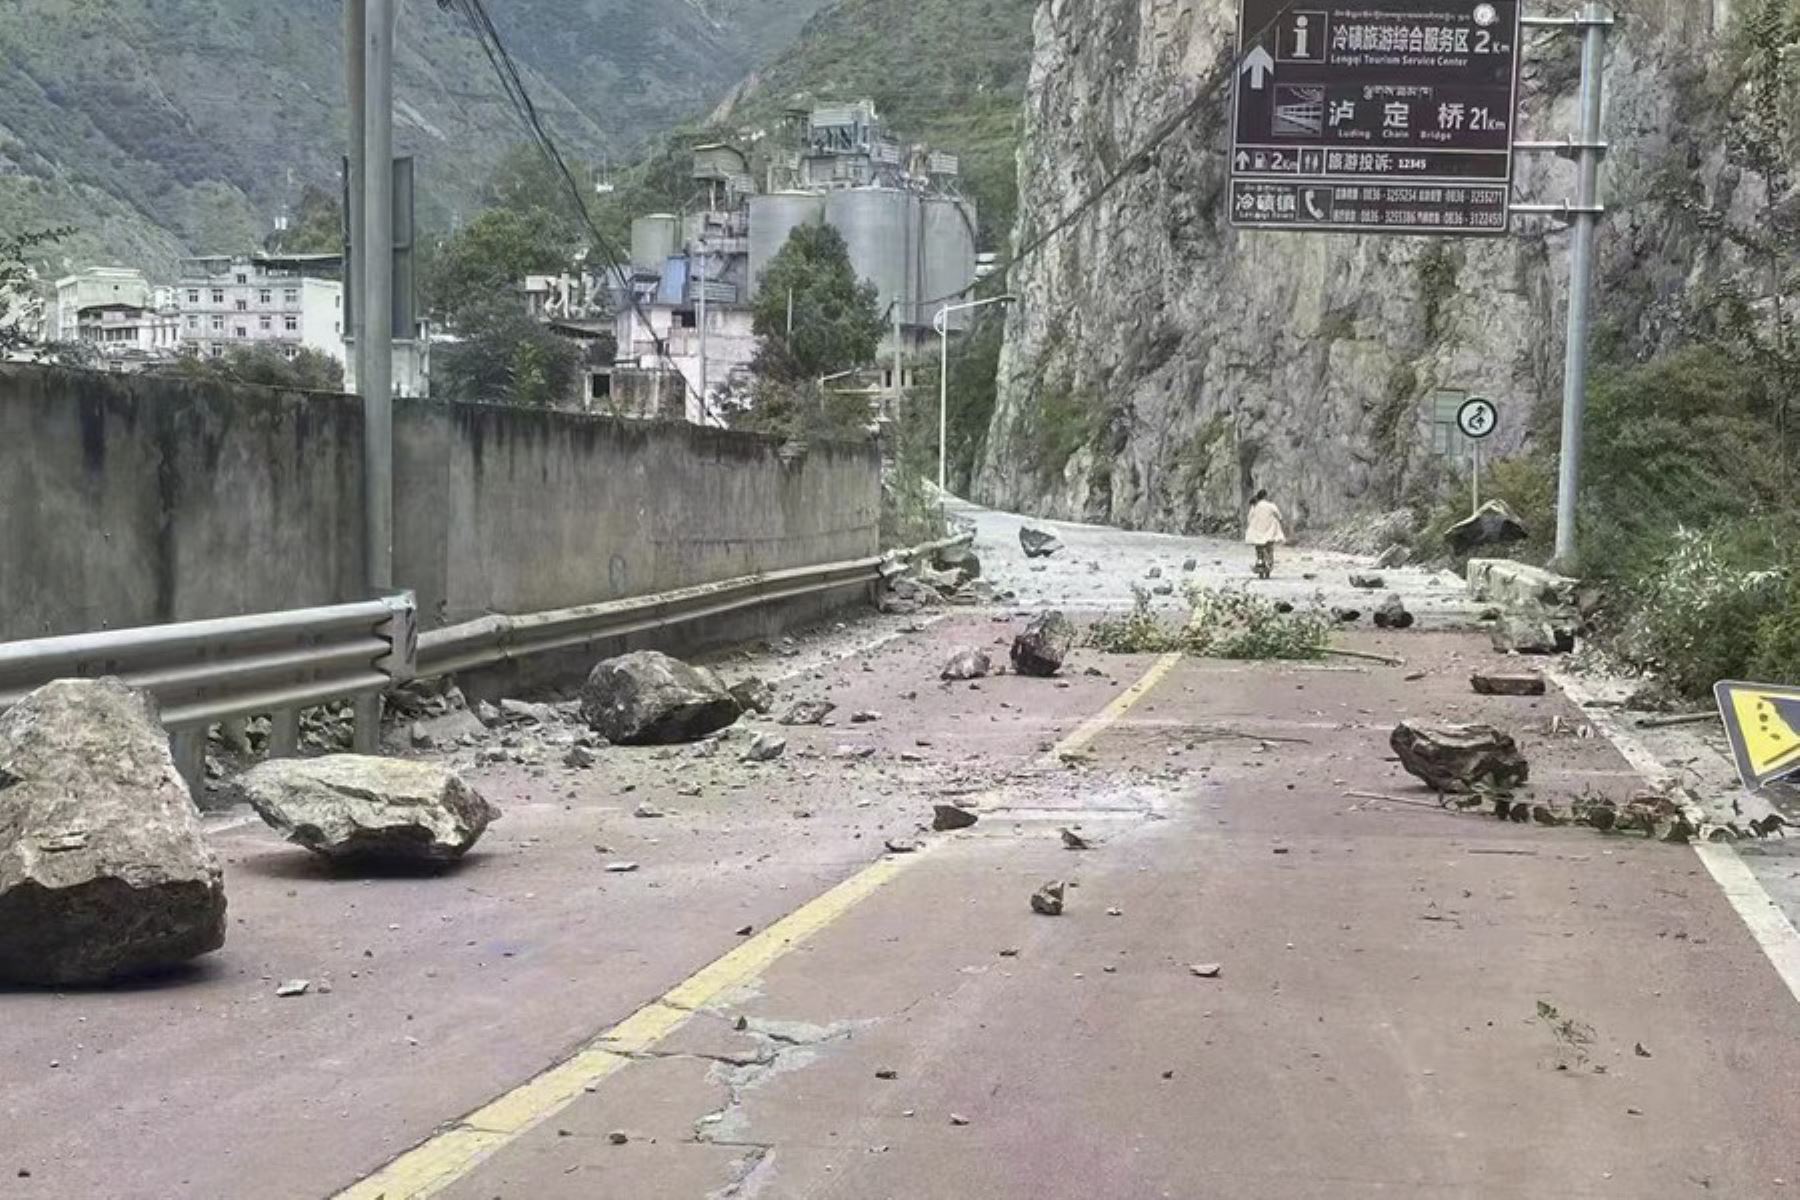 Rocas caídas en una carretera cerca de la ciudad de Lengqi en el condado de Luding de la provincia de Sichuan luego de terremoto de magnitud 6,8 que sacudió el condado de Luding. Foto: Xinhua News